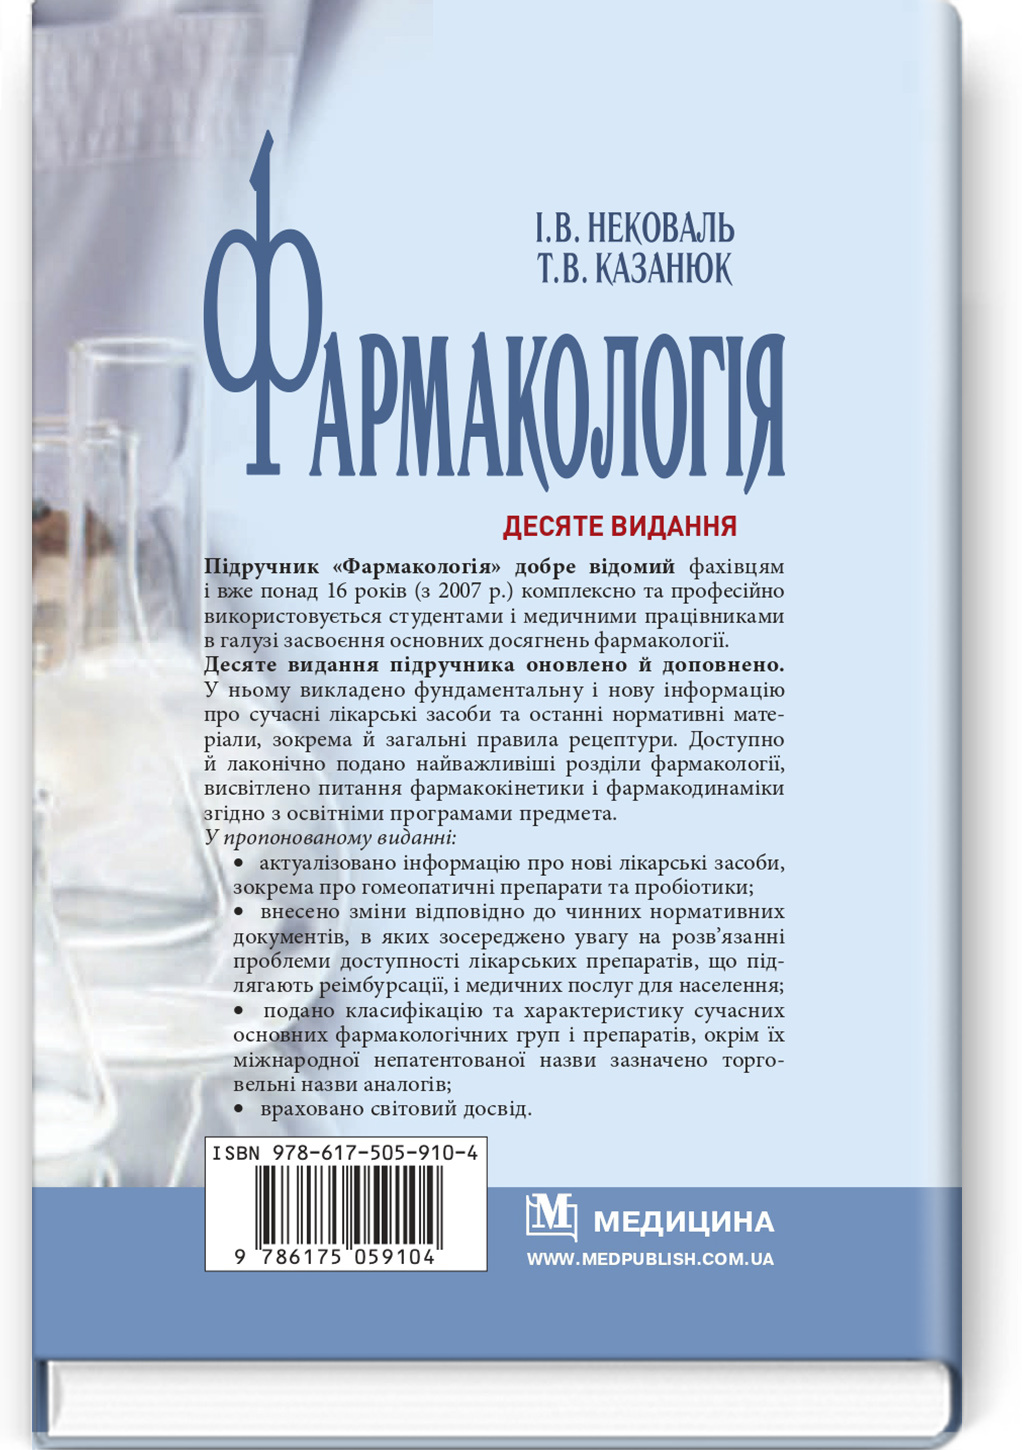 Фармакологія: підручник. Автор — І.В. Нековаль, Т.В. Казанюк. 